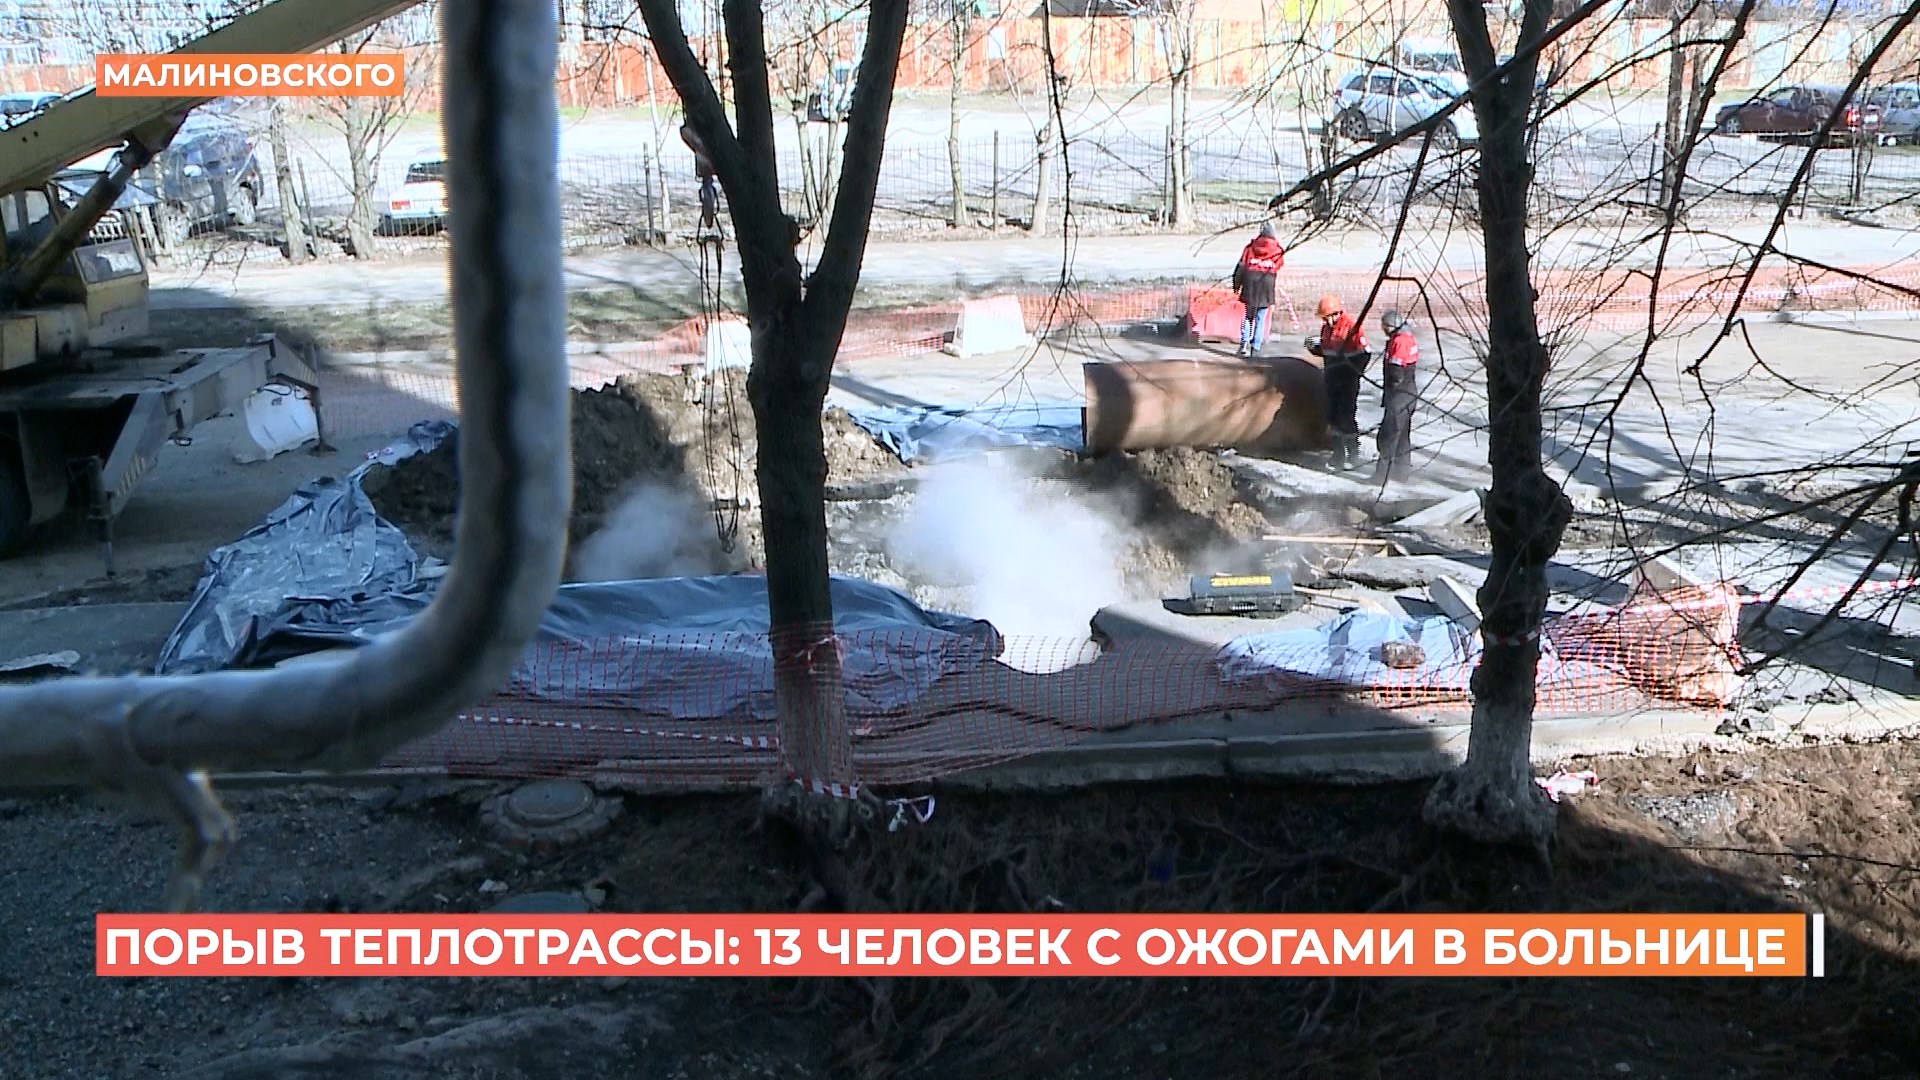 13 человек попали в больницу после порыва теплотрассы на Малиновского